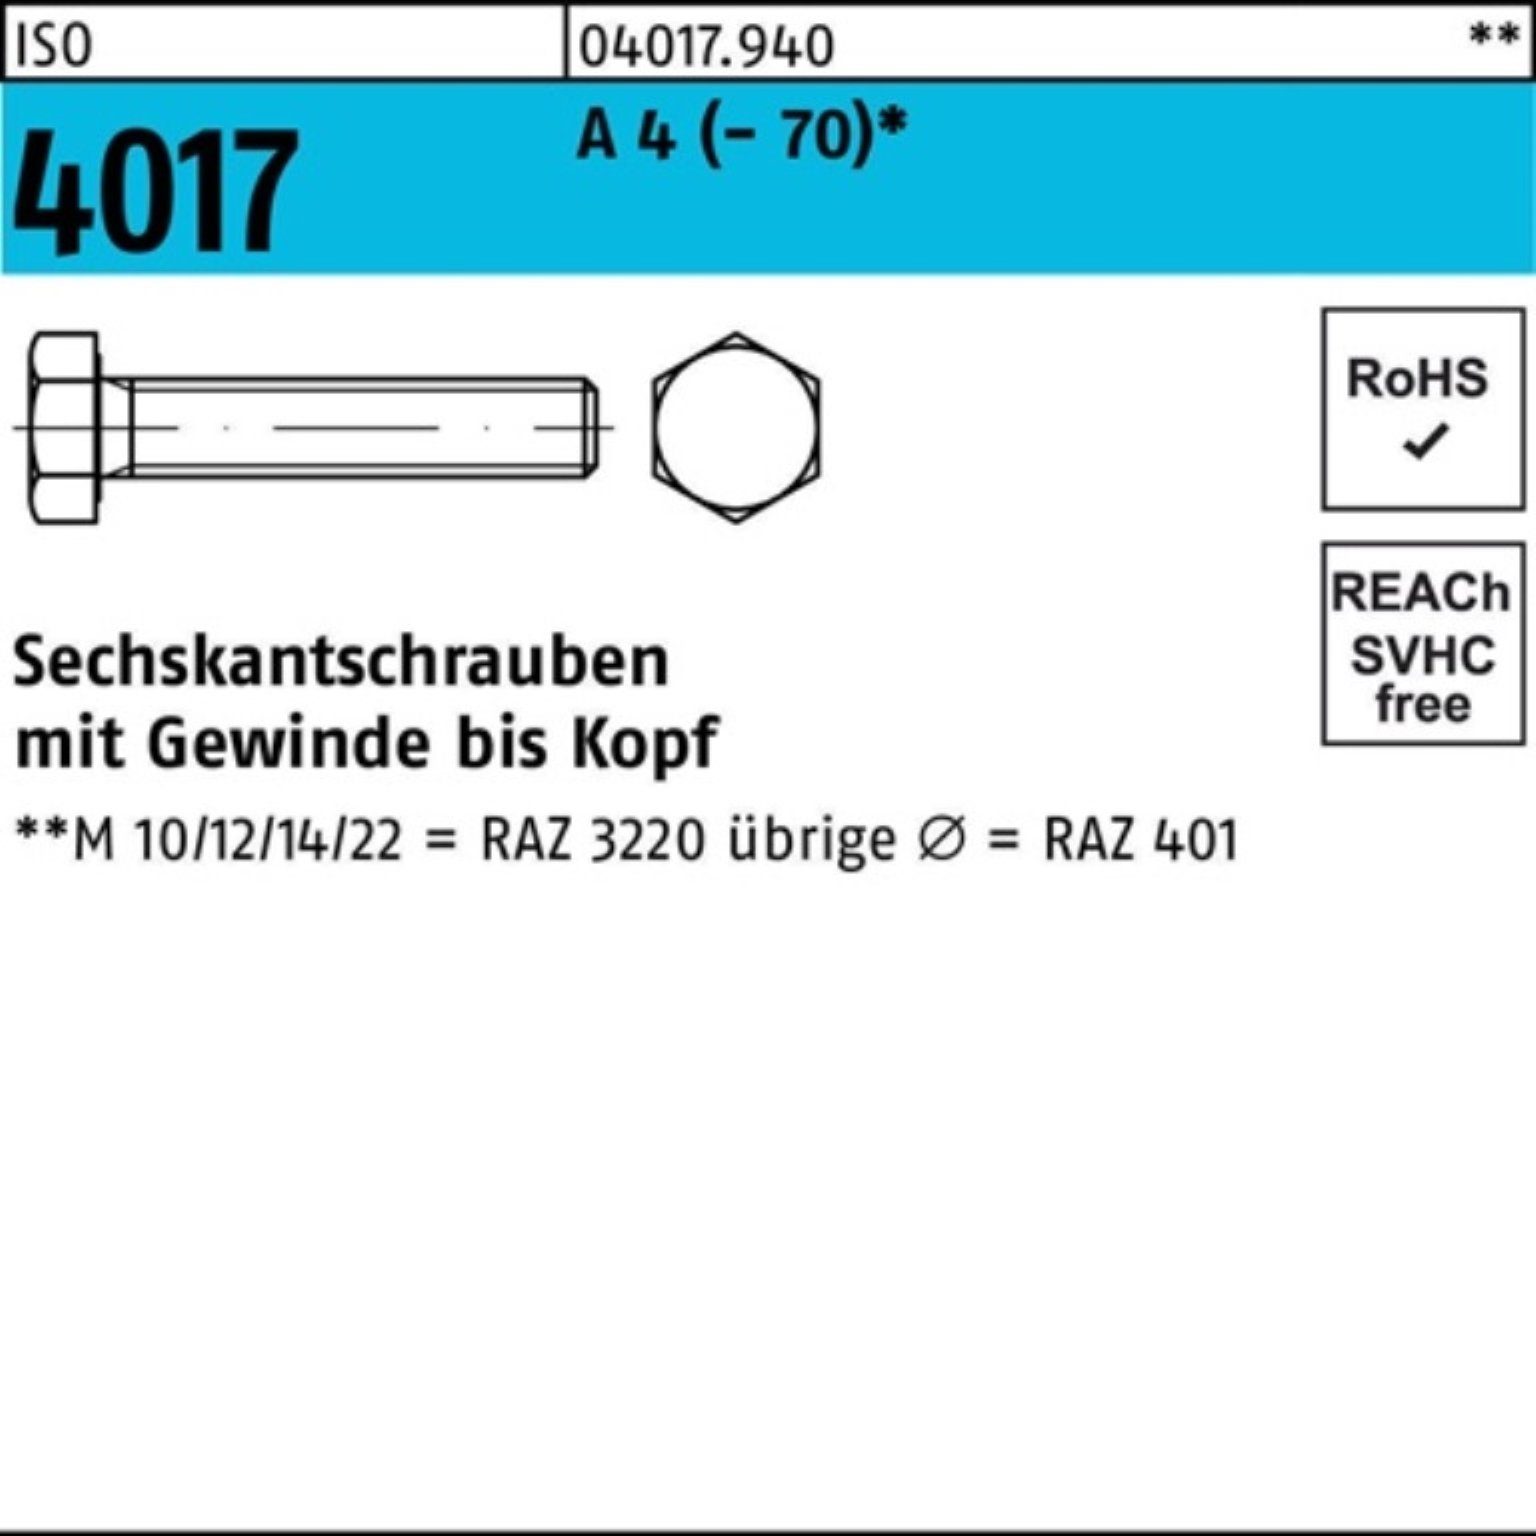 Bufab Sechskantschraube 100er Pack Sechskantschraube ISO 4017 VG M10x 140 A 4 (70) 1 Stück